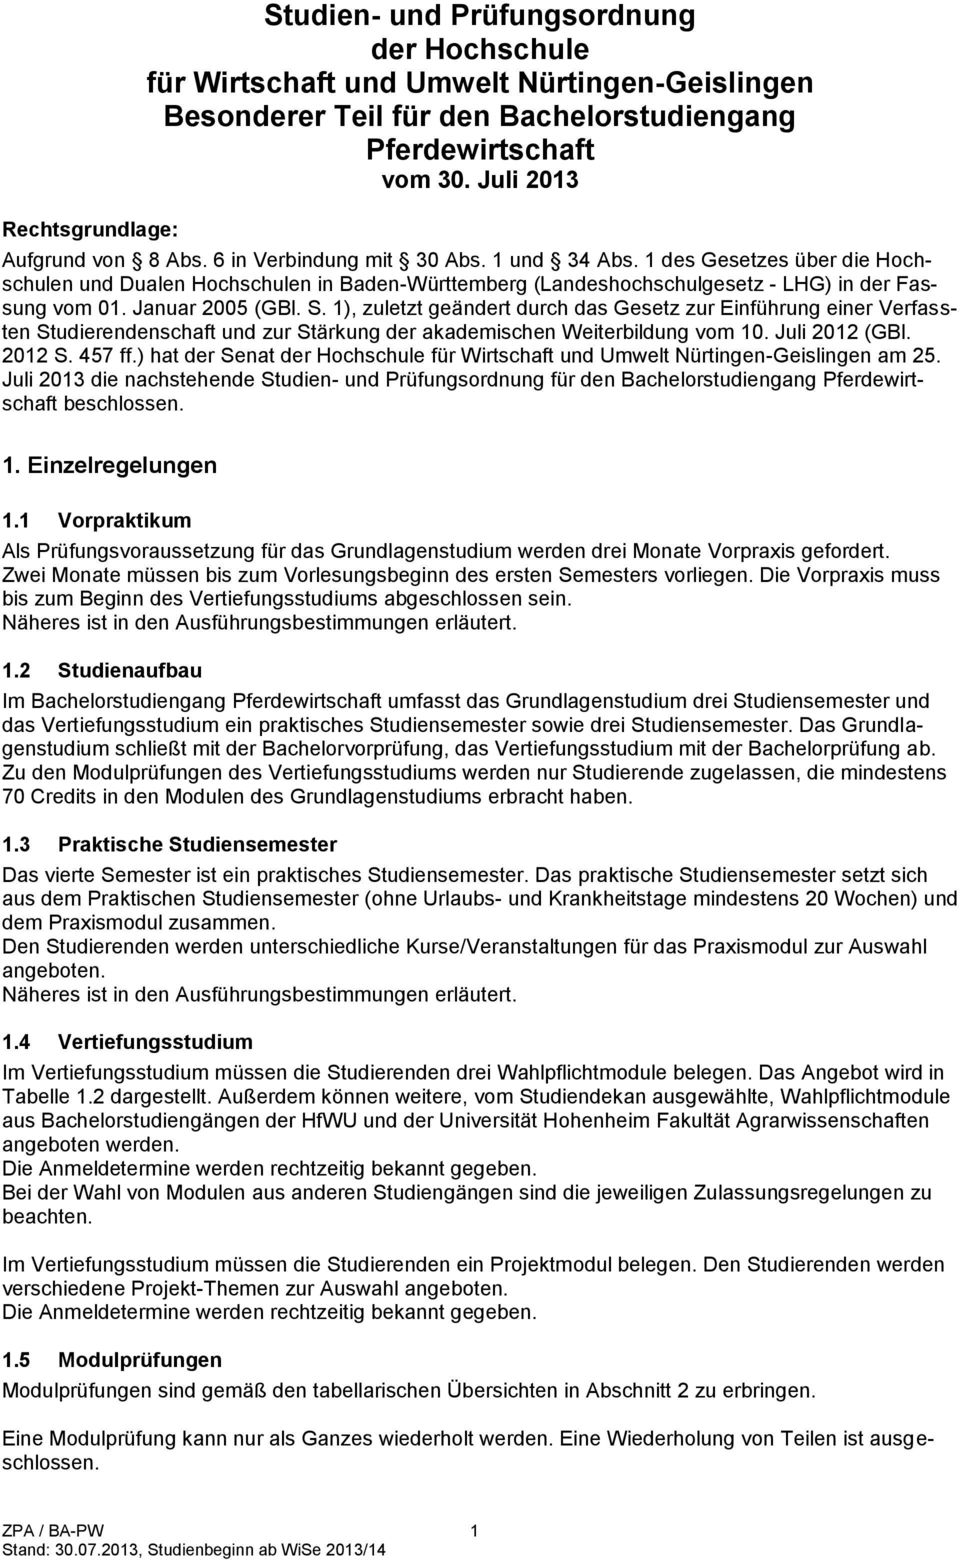 1 des Gesetzes über die Hochschulen und Dualen Hochschulen in Baden-Württemberg (Landeshochschulgesetz - LHG) in der Fassung vom 01. Januar 2005 (GBl. S.